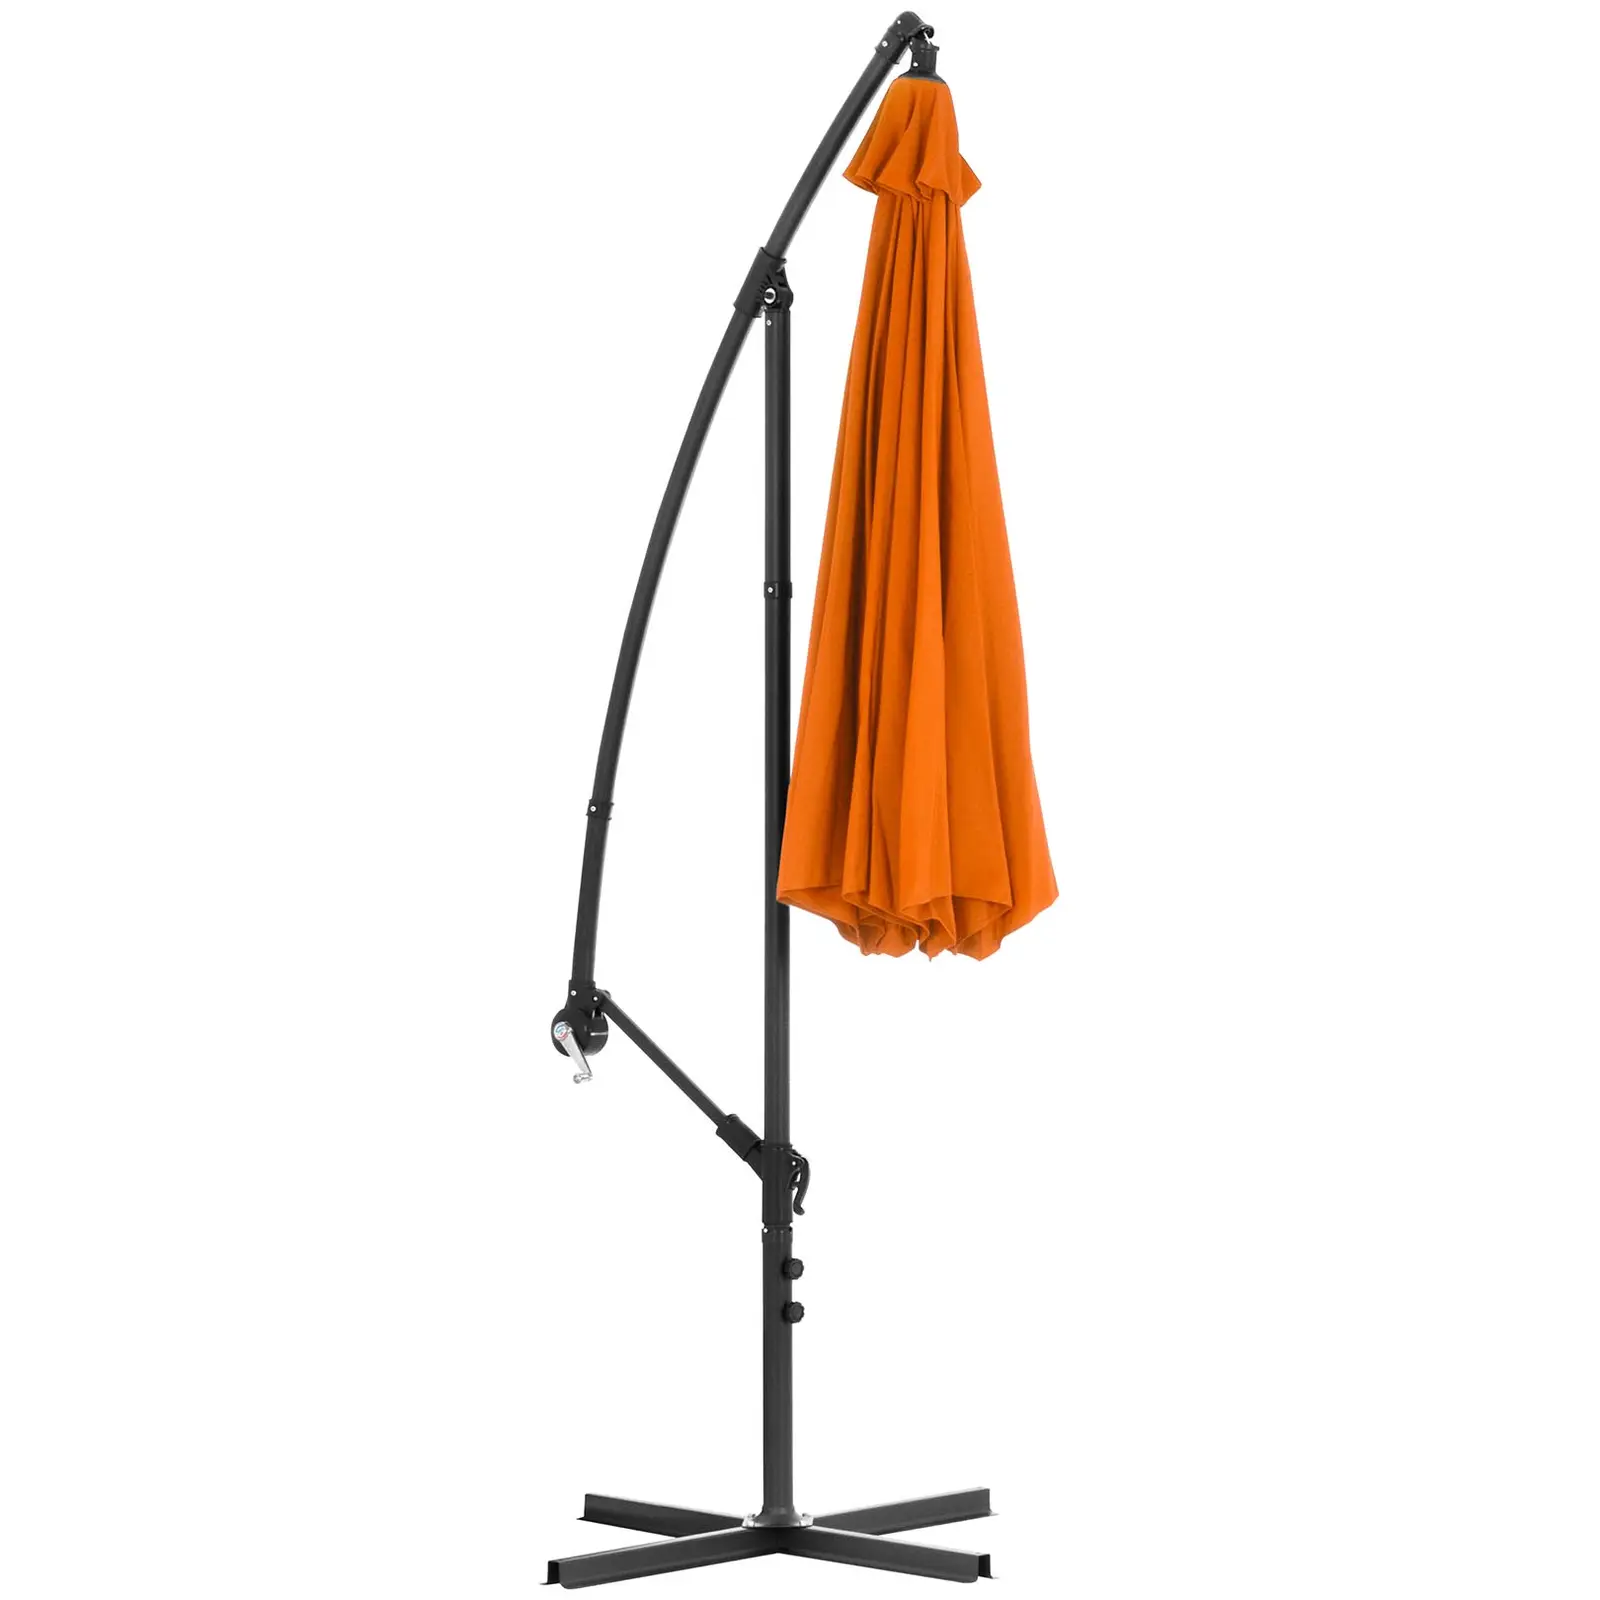 B-Ware Ampelschirm - Orange - rund - Ø 300 cm - neigbar